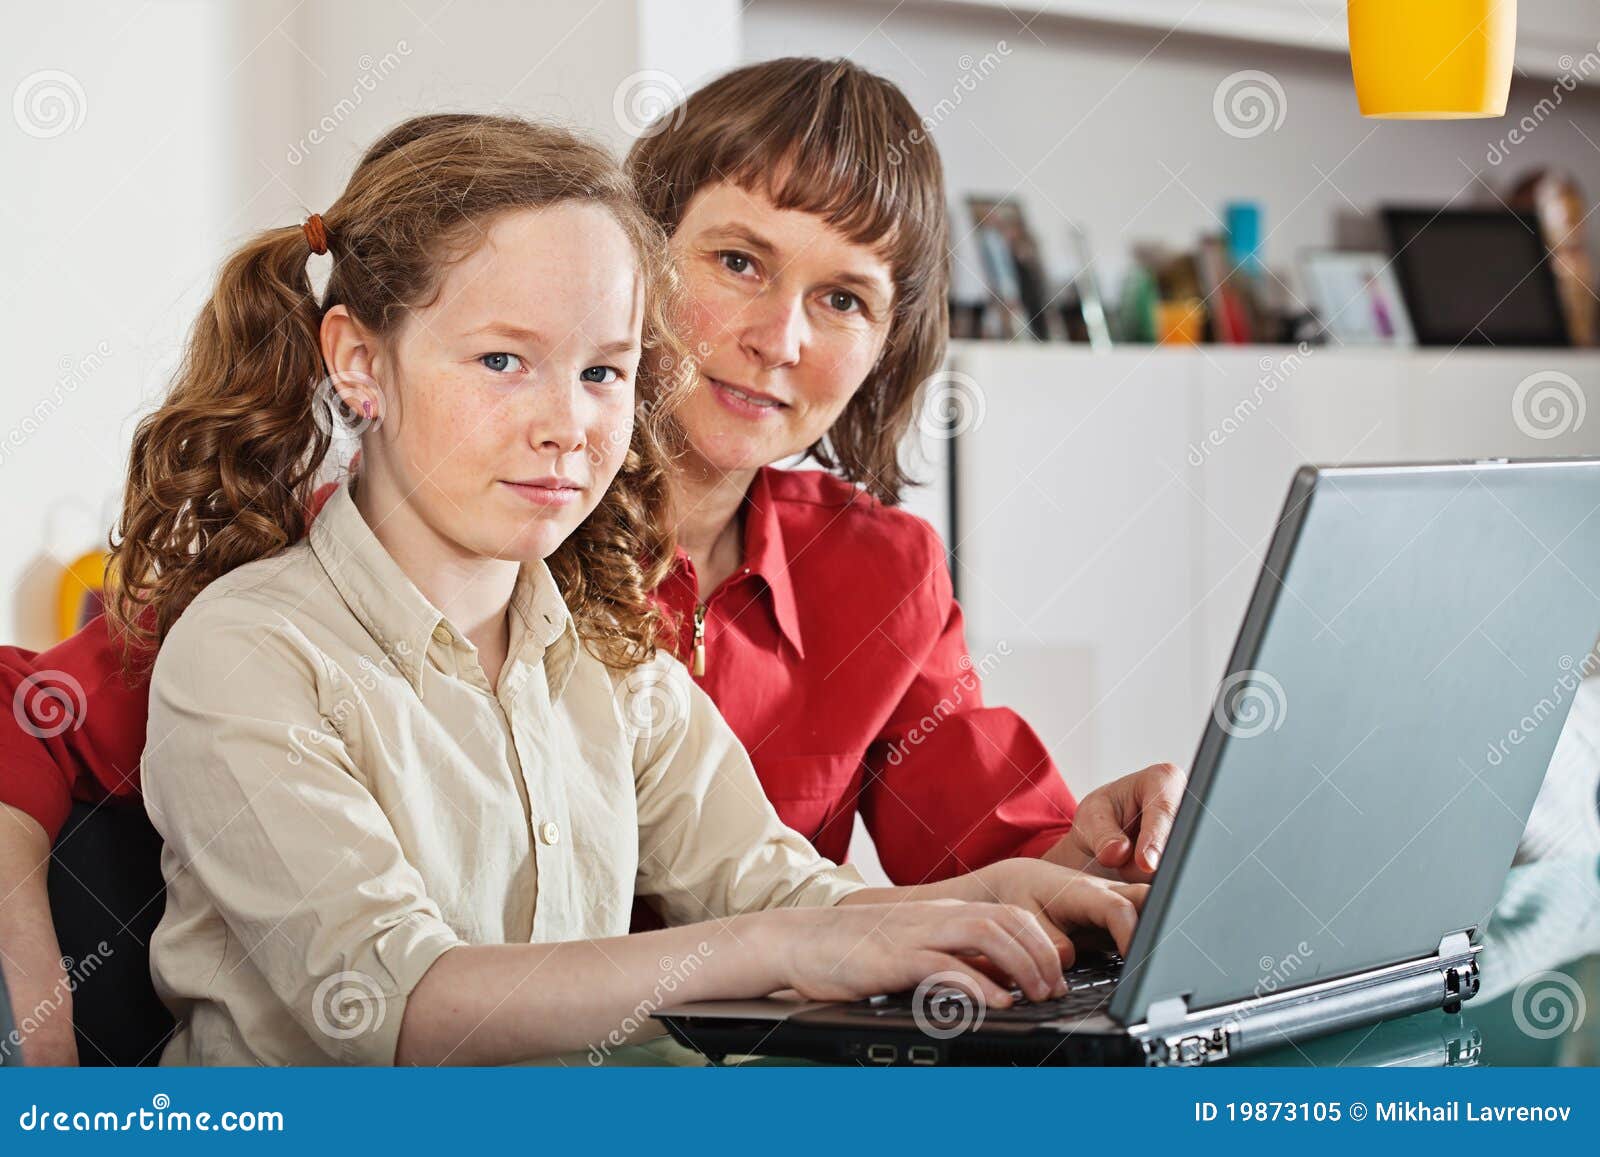 Домашнее подросток маме. Фотобанк Лори мама и подросток. Ноутбук для Дочки. Мама и дочь у ноутбука. Мама и подросток у компьютера.